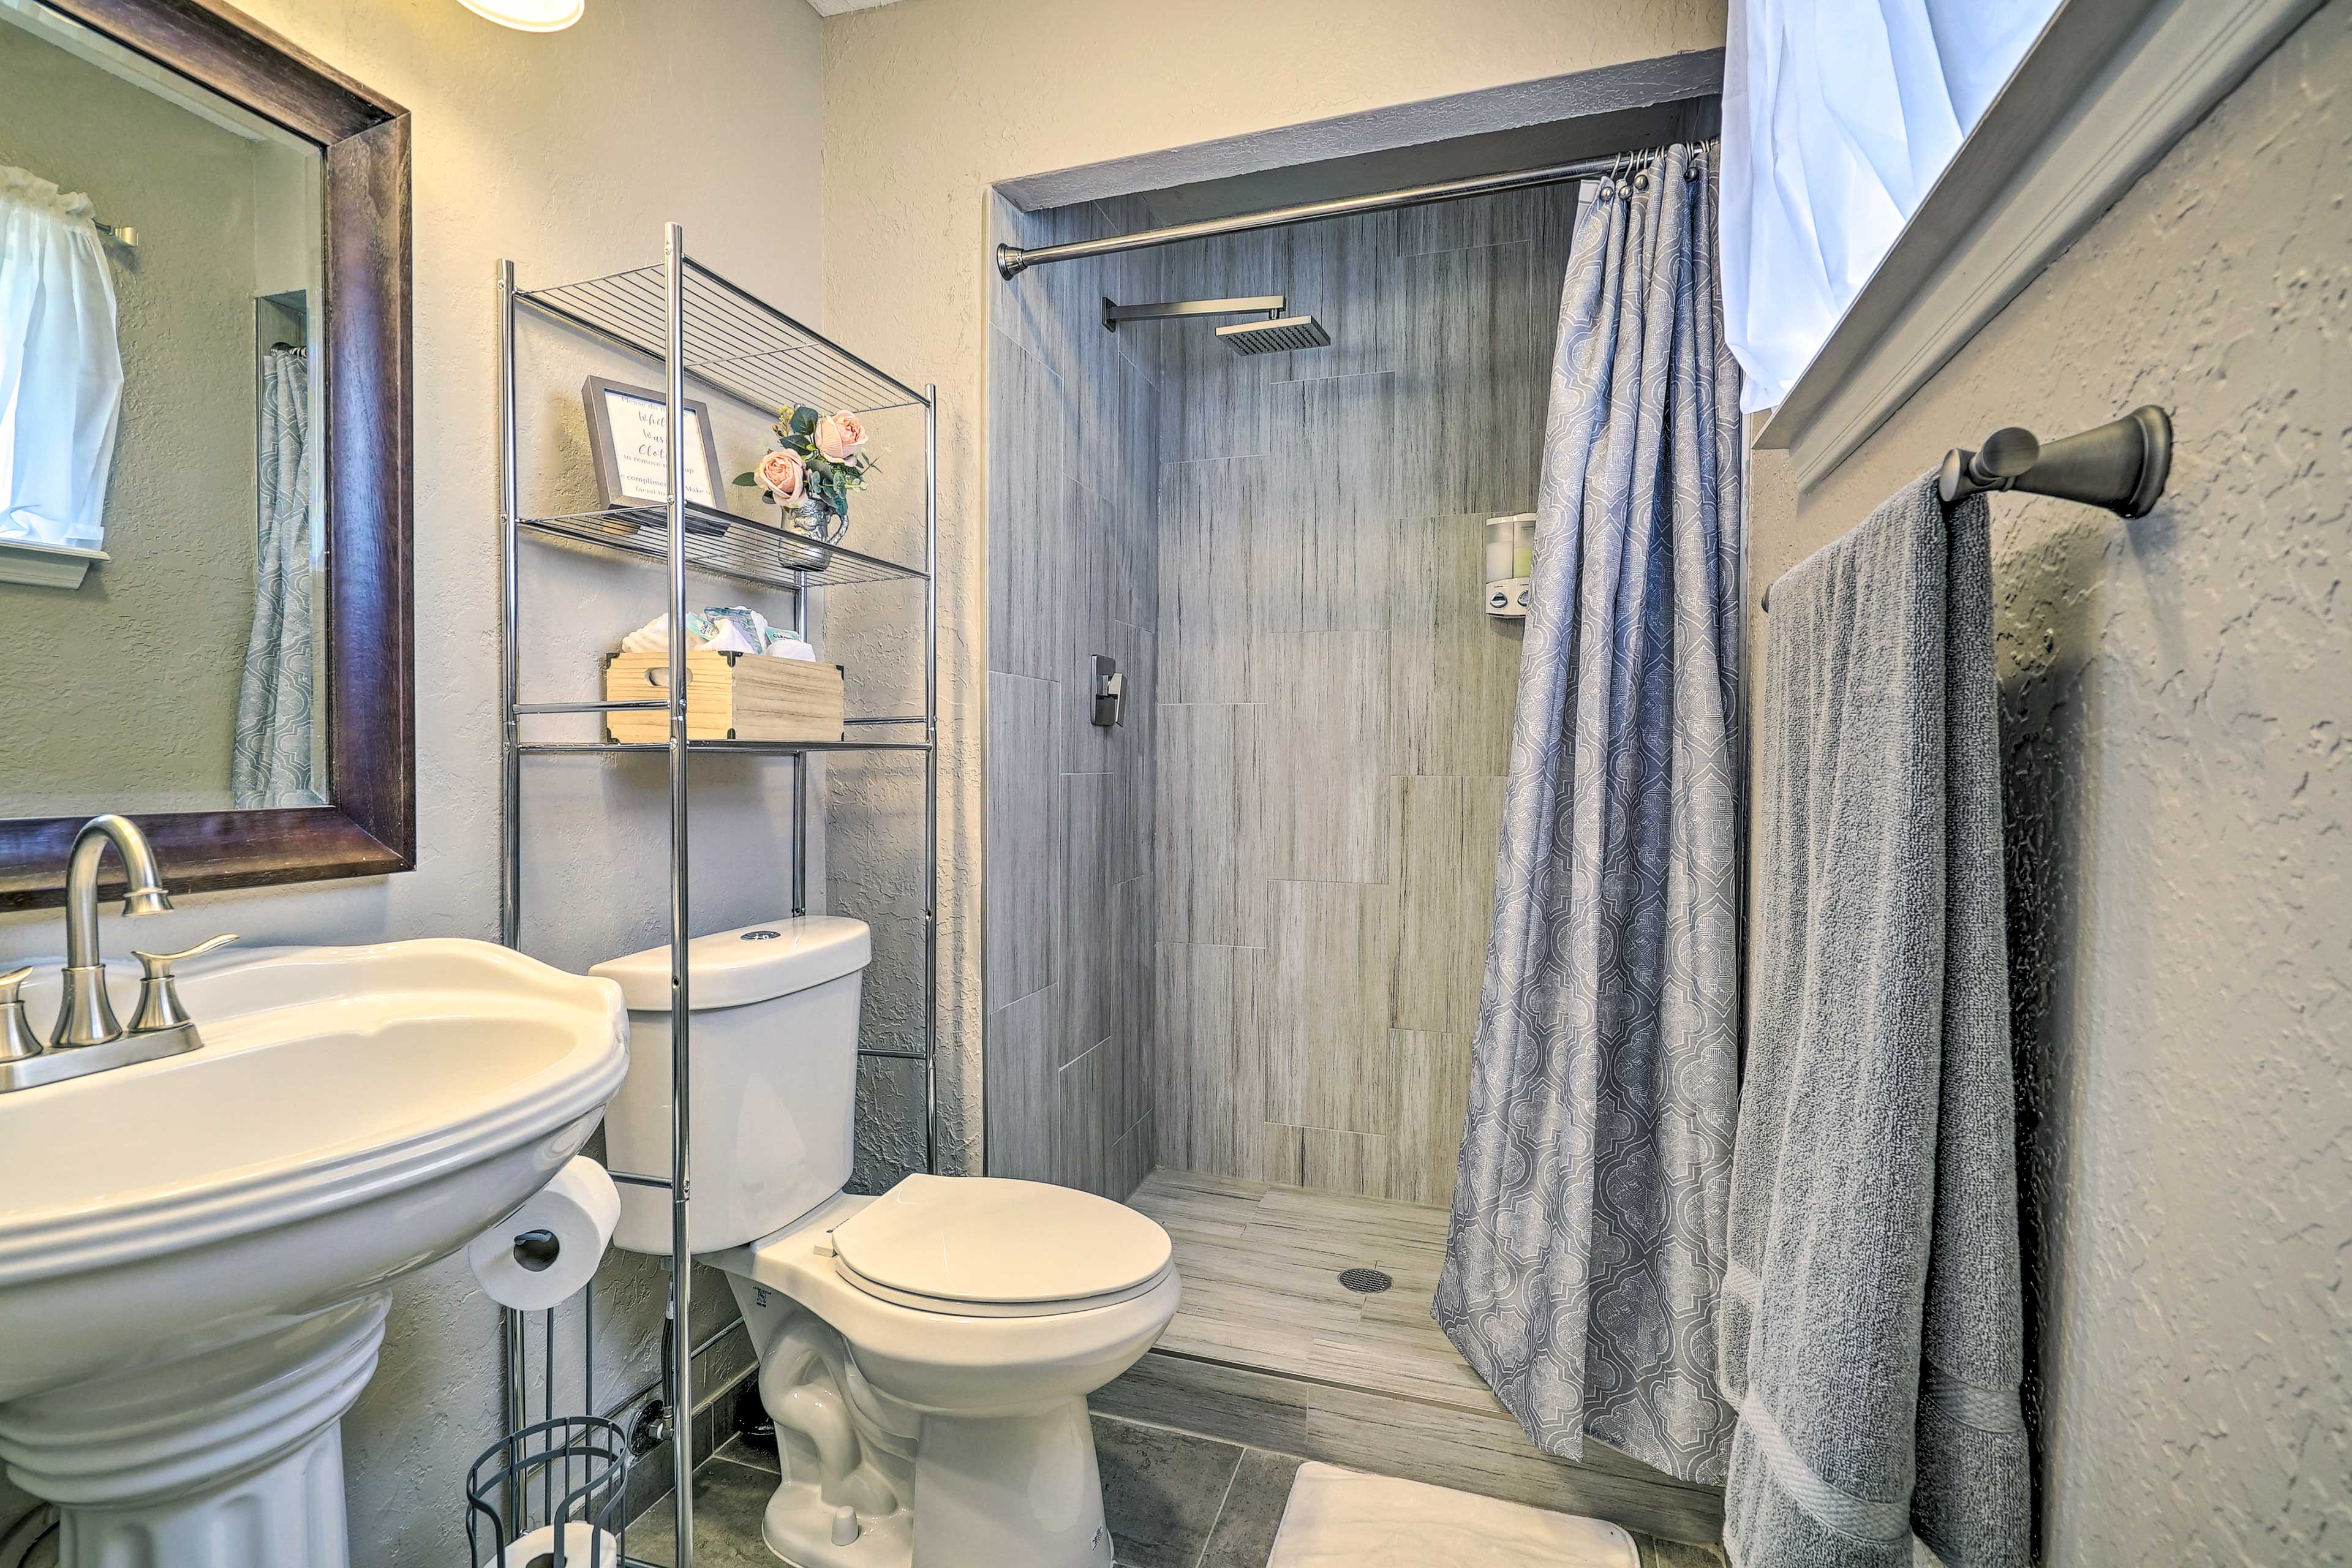 En-Suite Bathroom | Complimentary Toiletries | Linens & Towels | Hair Dryer